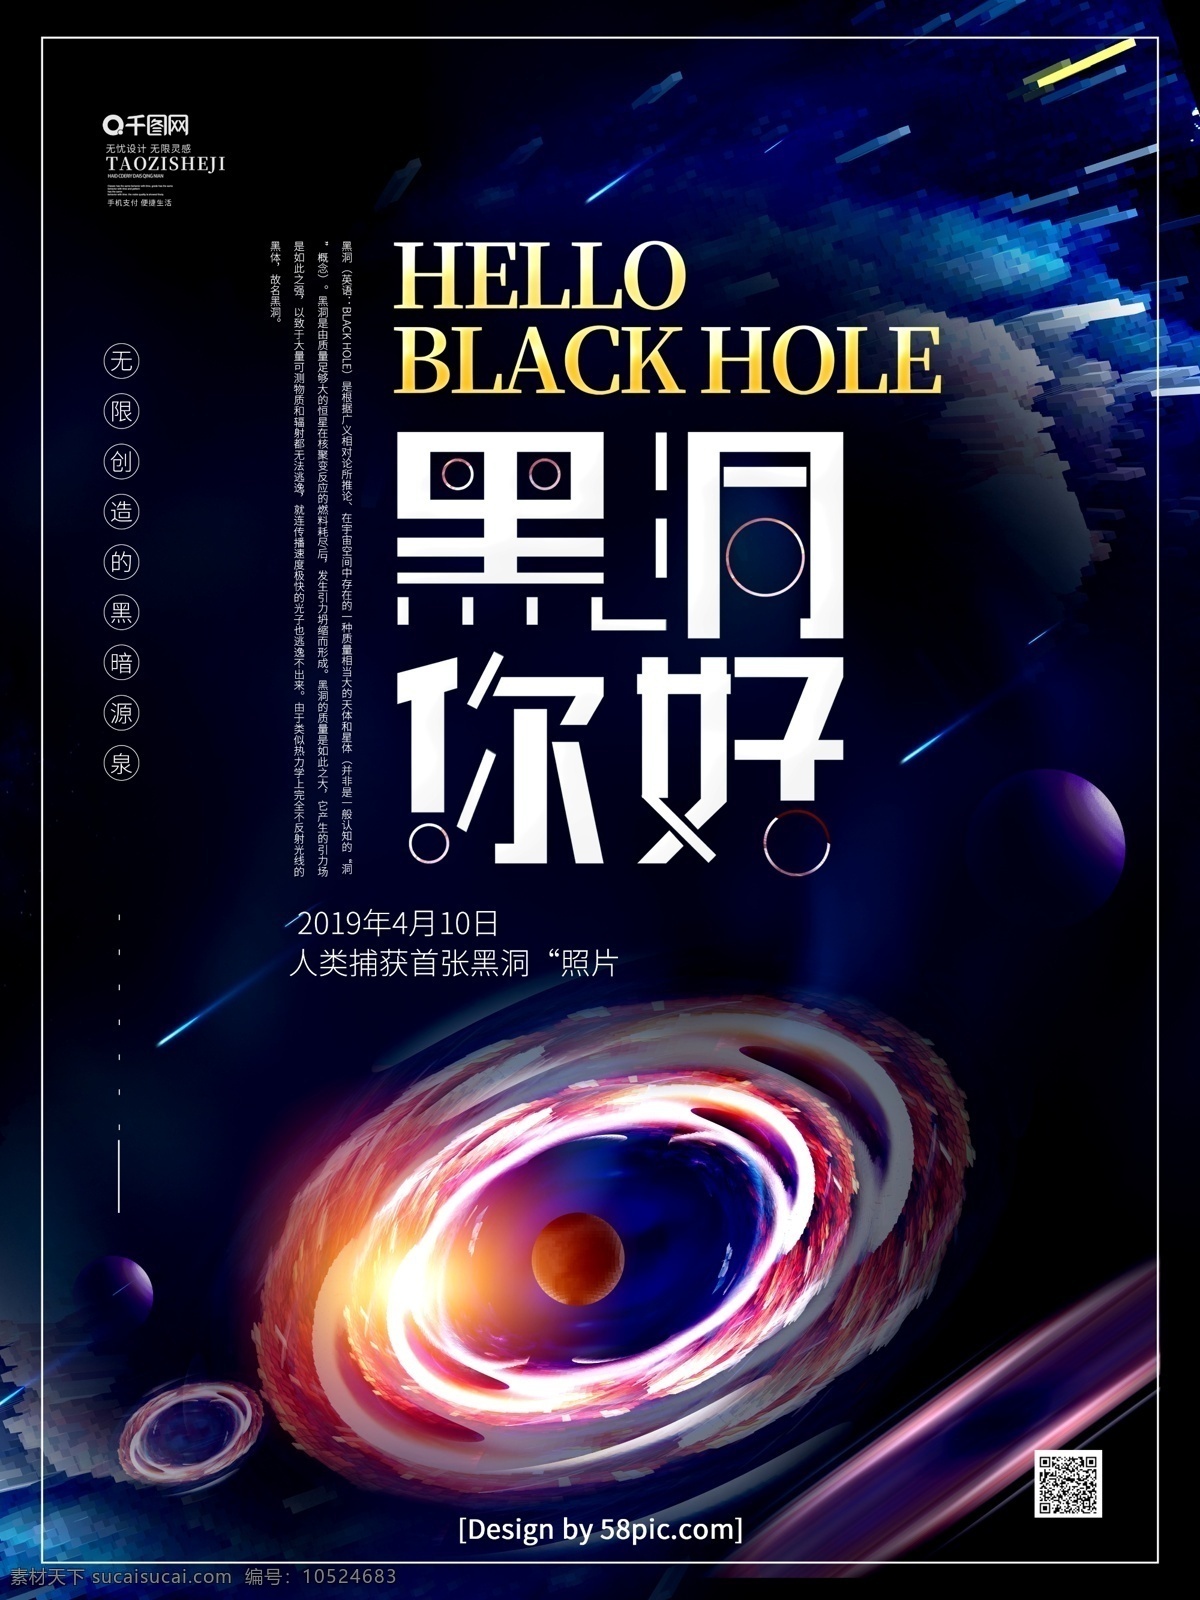 原创 黑色 创意 字体 黑洞 你好 宣传海报 黑洞海报 黑洞广告 广义相对论 恒星 星际云 白洞 宇宙探索 银河系 星空 星球 太空探索 漩涡 流星 太阳系 航天梦 宇宙黑洞 宇宙科技 宇宙星系